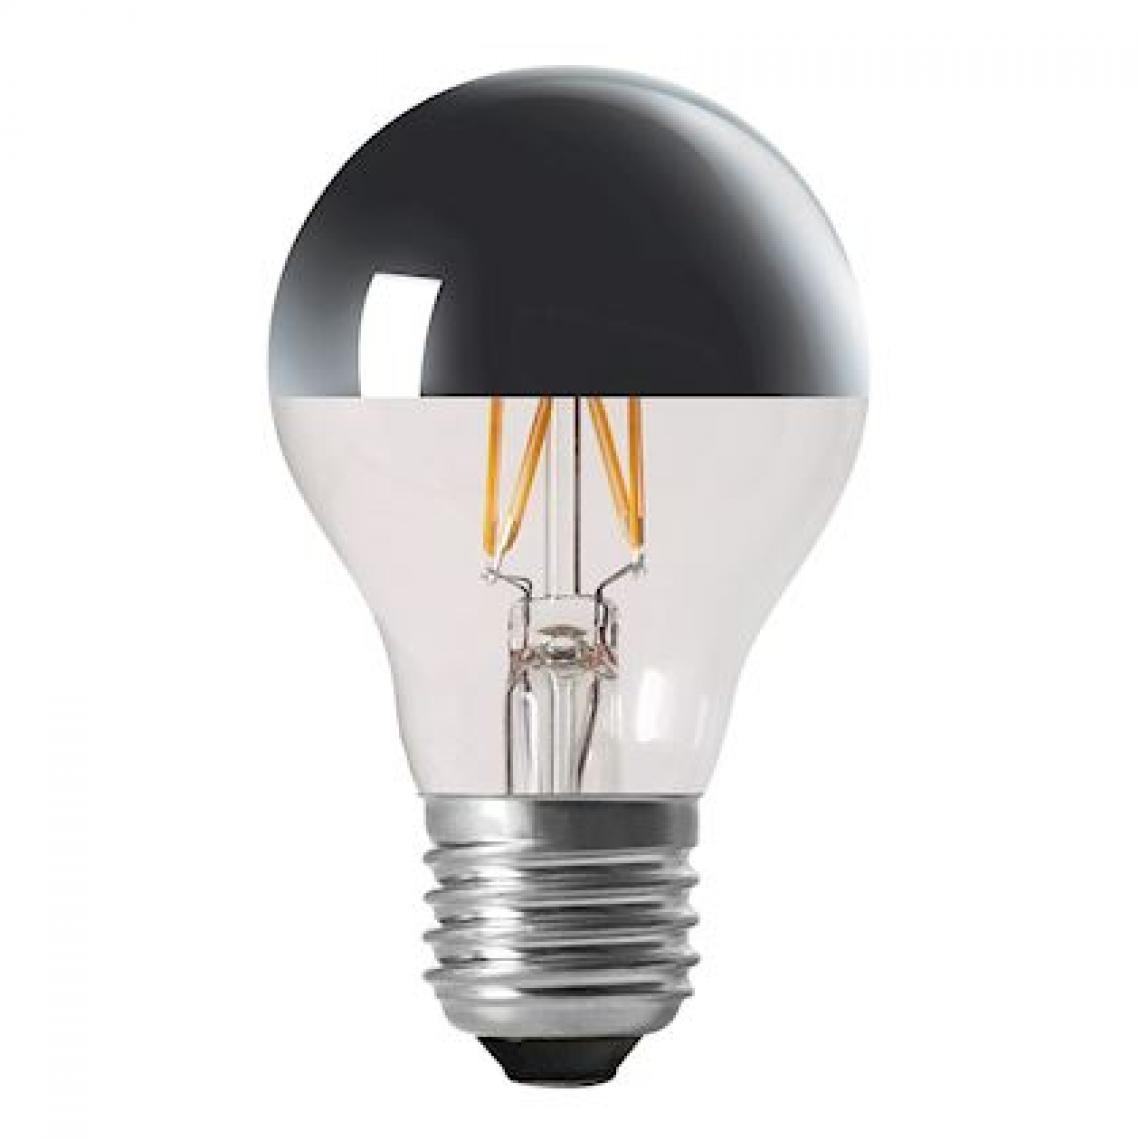 Aric - ampoule à led - aric deco - e27 - 4w - a60 - argentée - aric 20122 - Ampoules LED